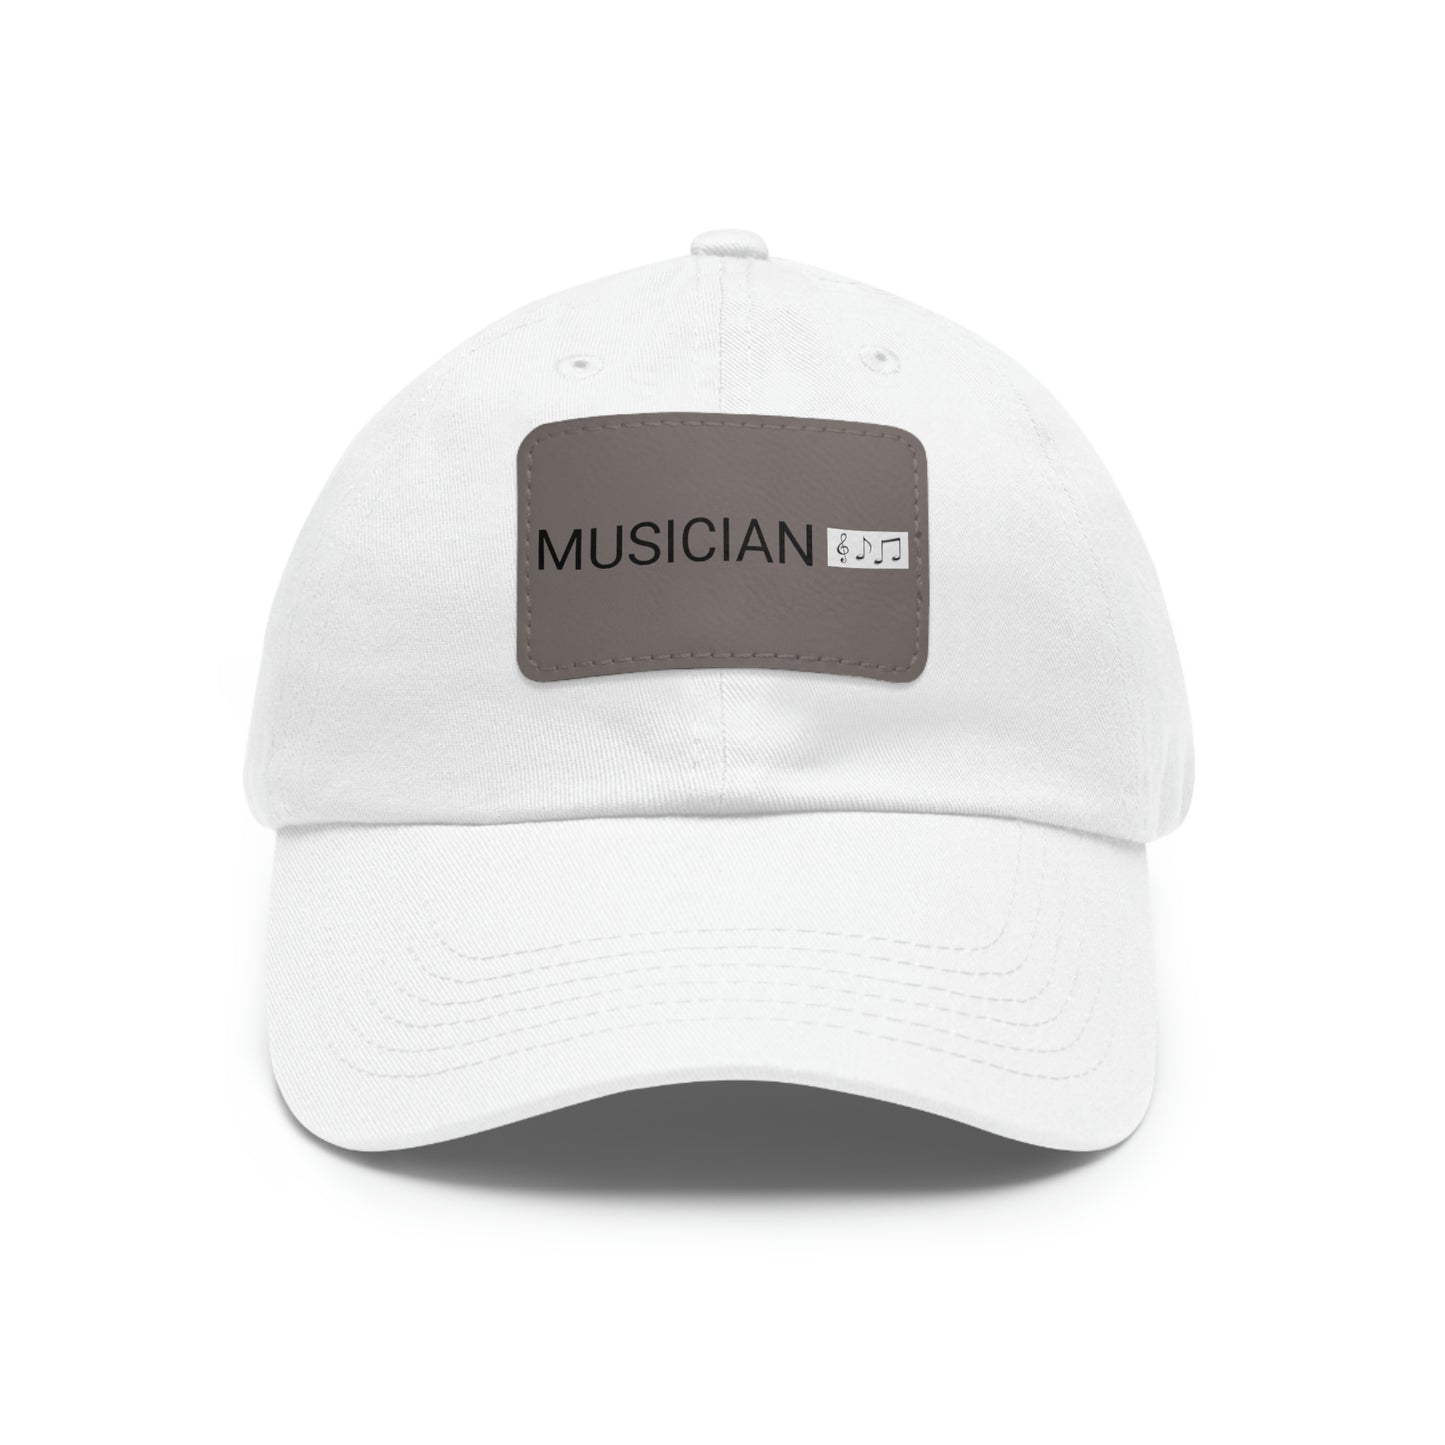 JOE'S MERCH Musician Hat